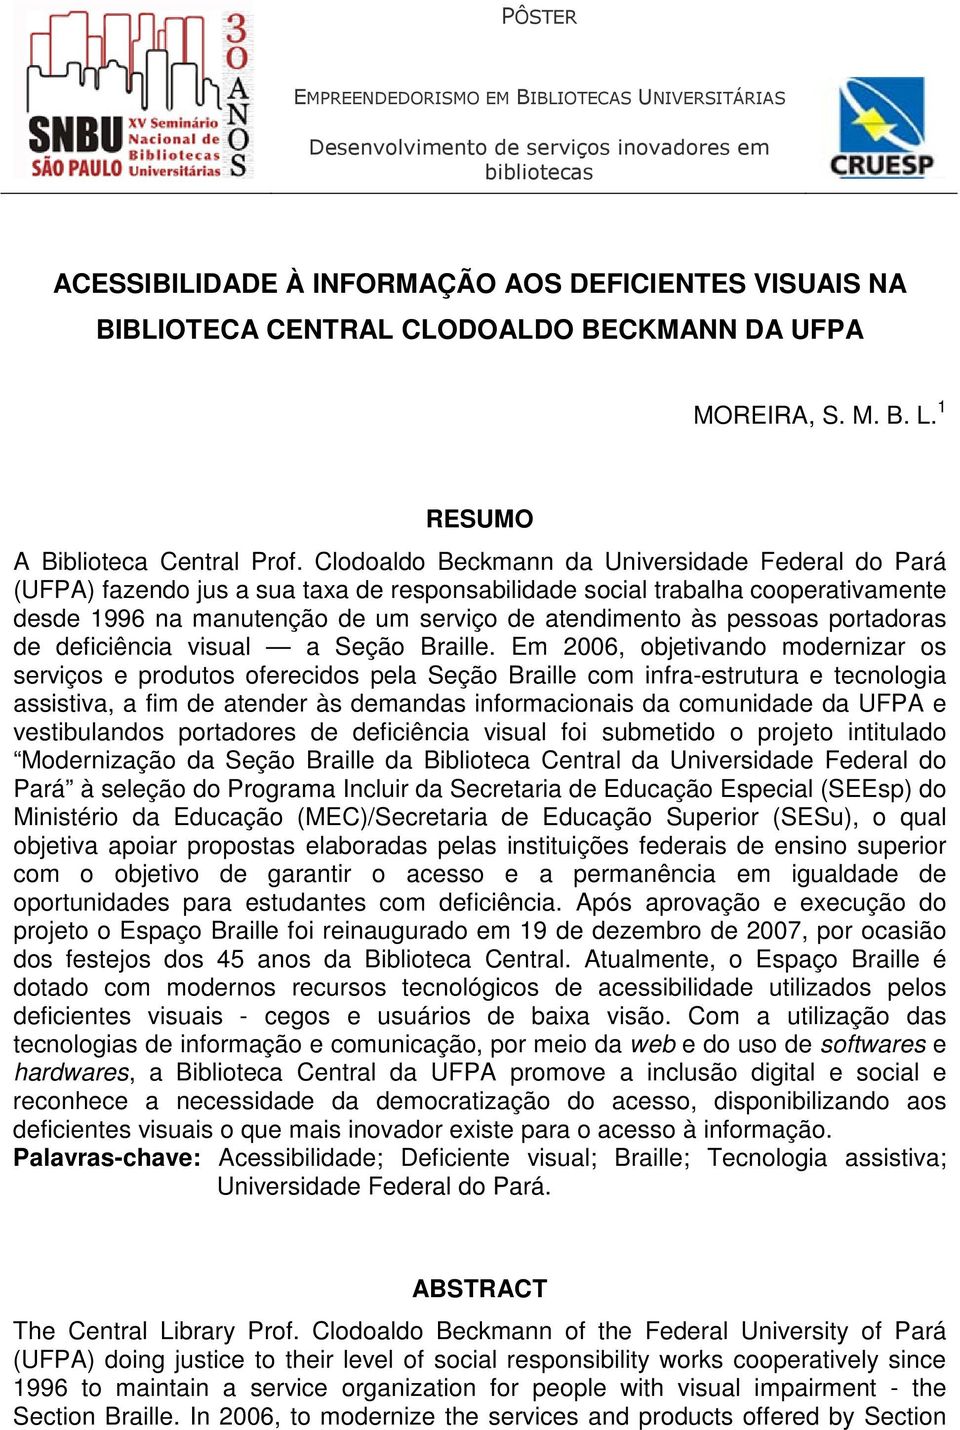 Clodoaldo Beckmann da Universidade Federal do Pará (UFPA) fazendo jus a sua taxa de responsabilidade social trabalha cooperativamente desde 1996 na manutenção de um serviço de atendimento às pessoas